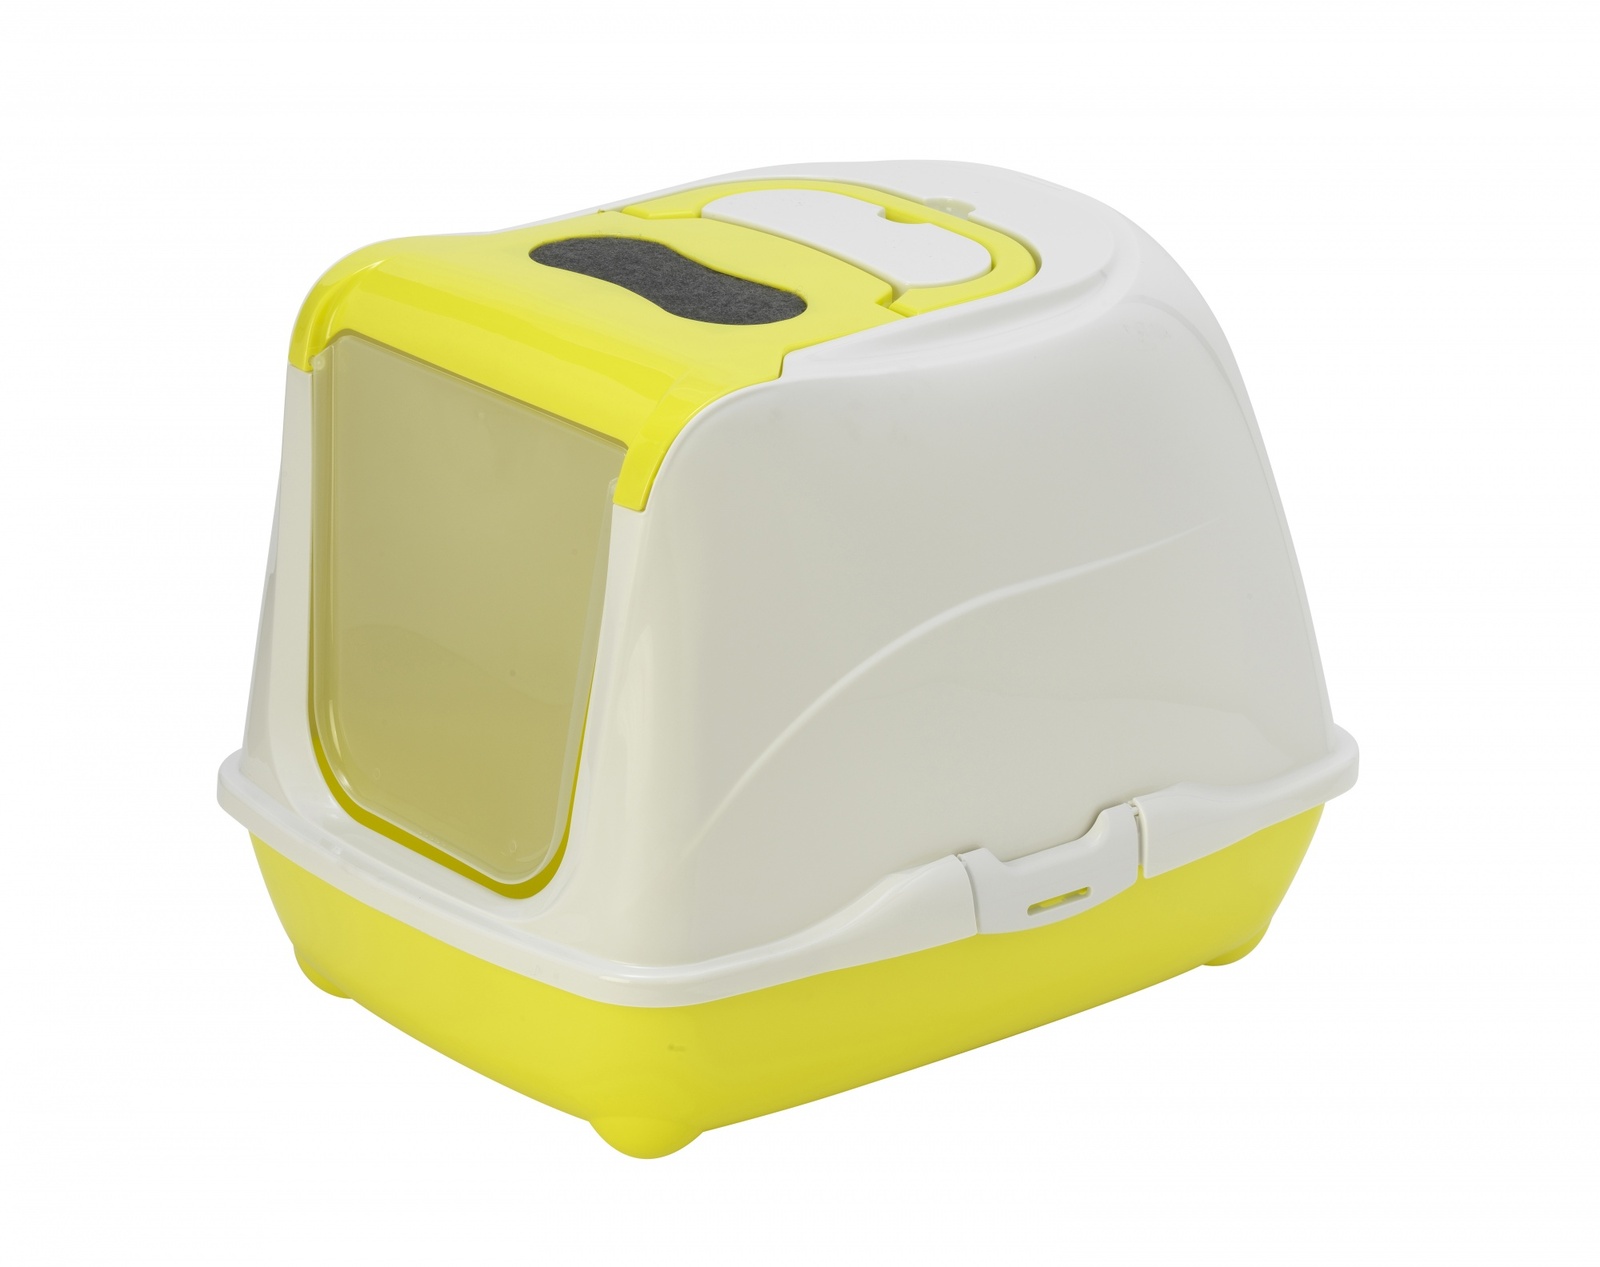 Moderna туалет-домик Flip с угольным фильтром, 50х39х37см, лимонно-желтый (1,2 кг) 